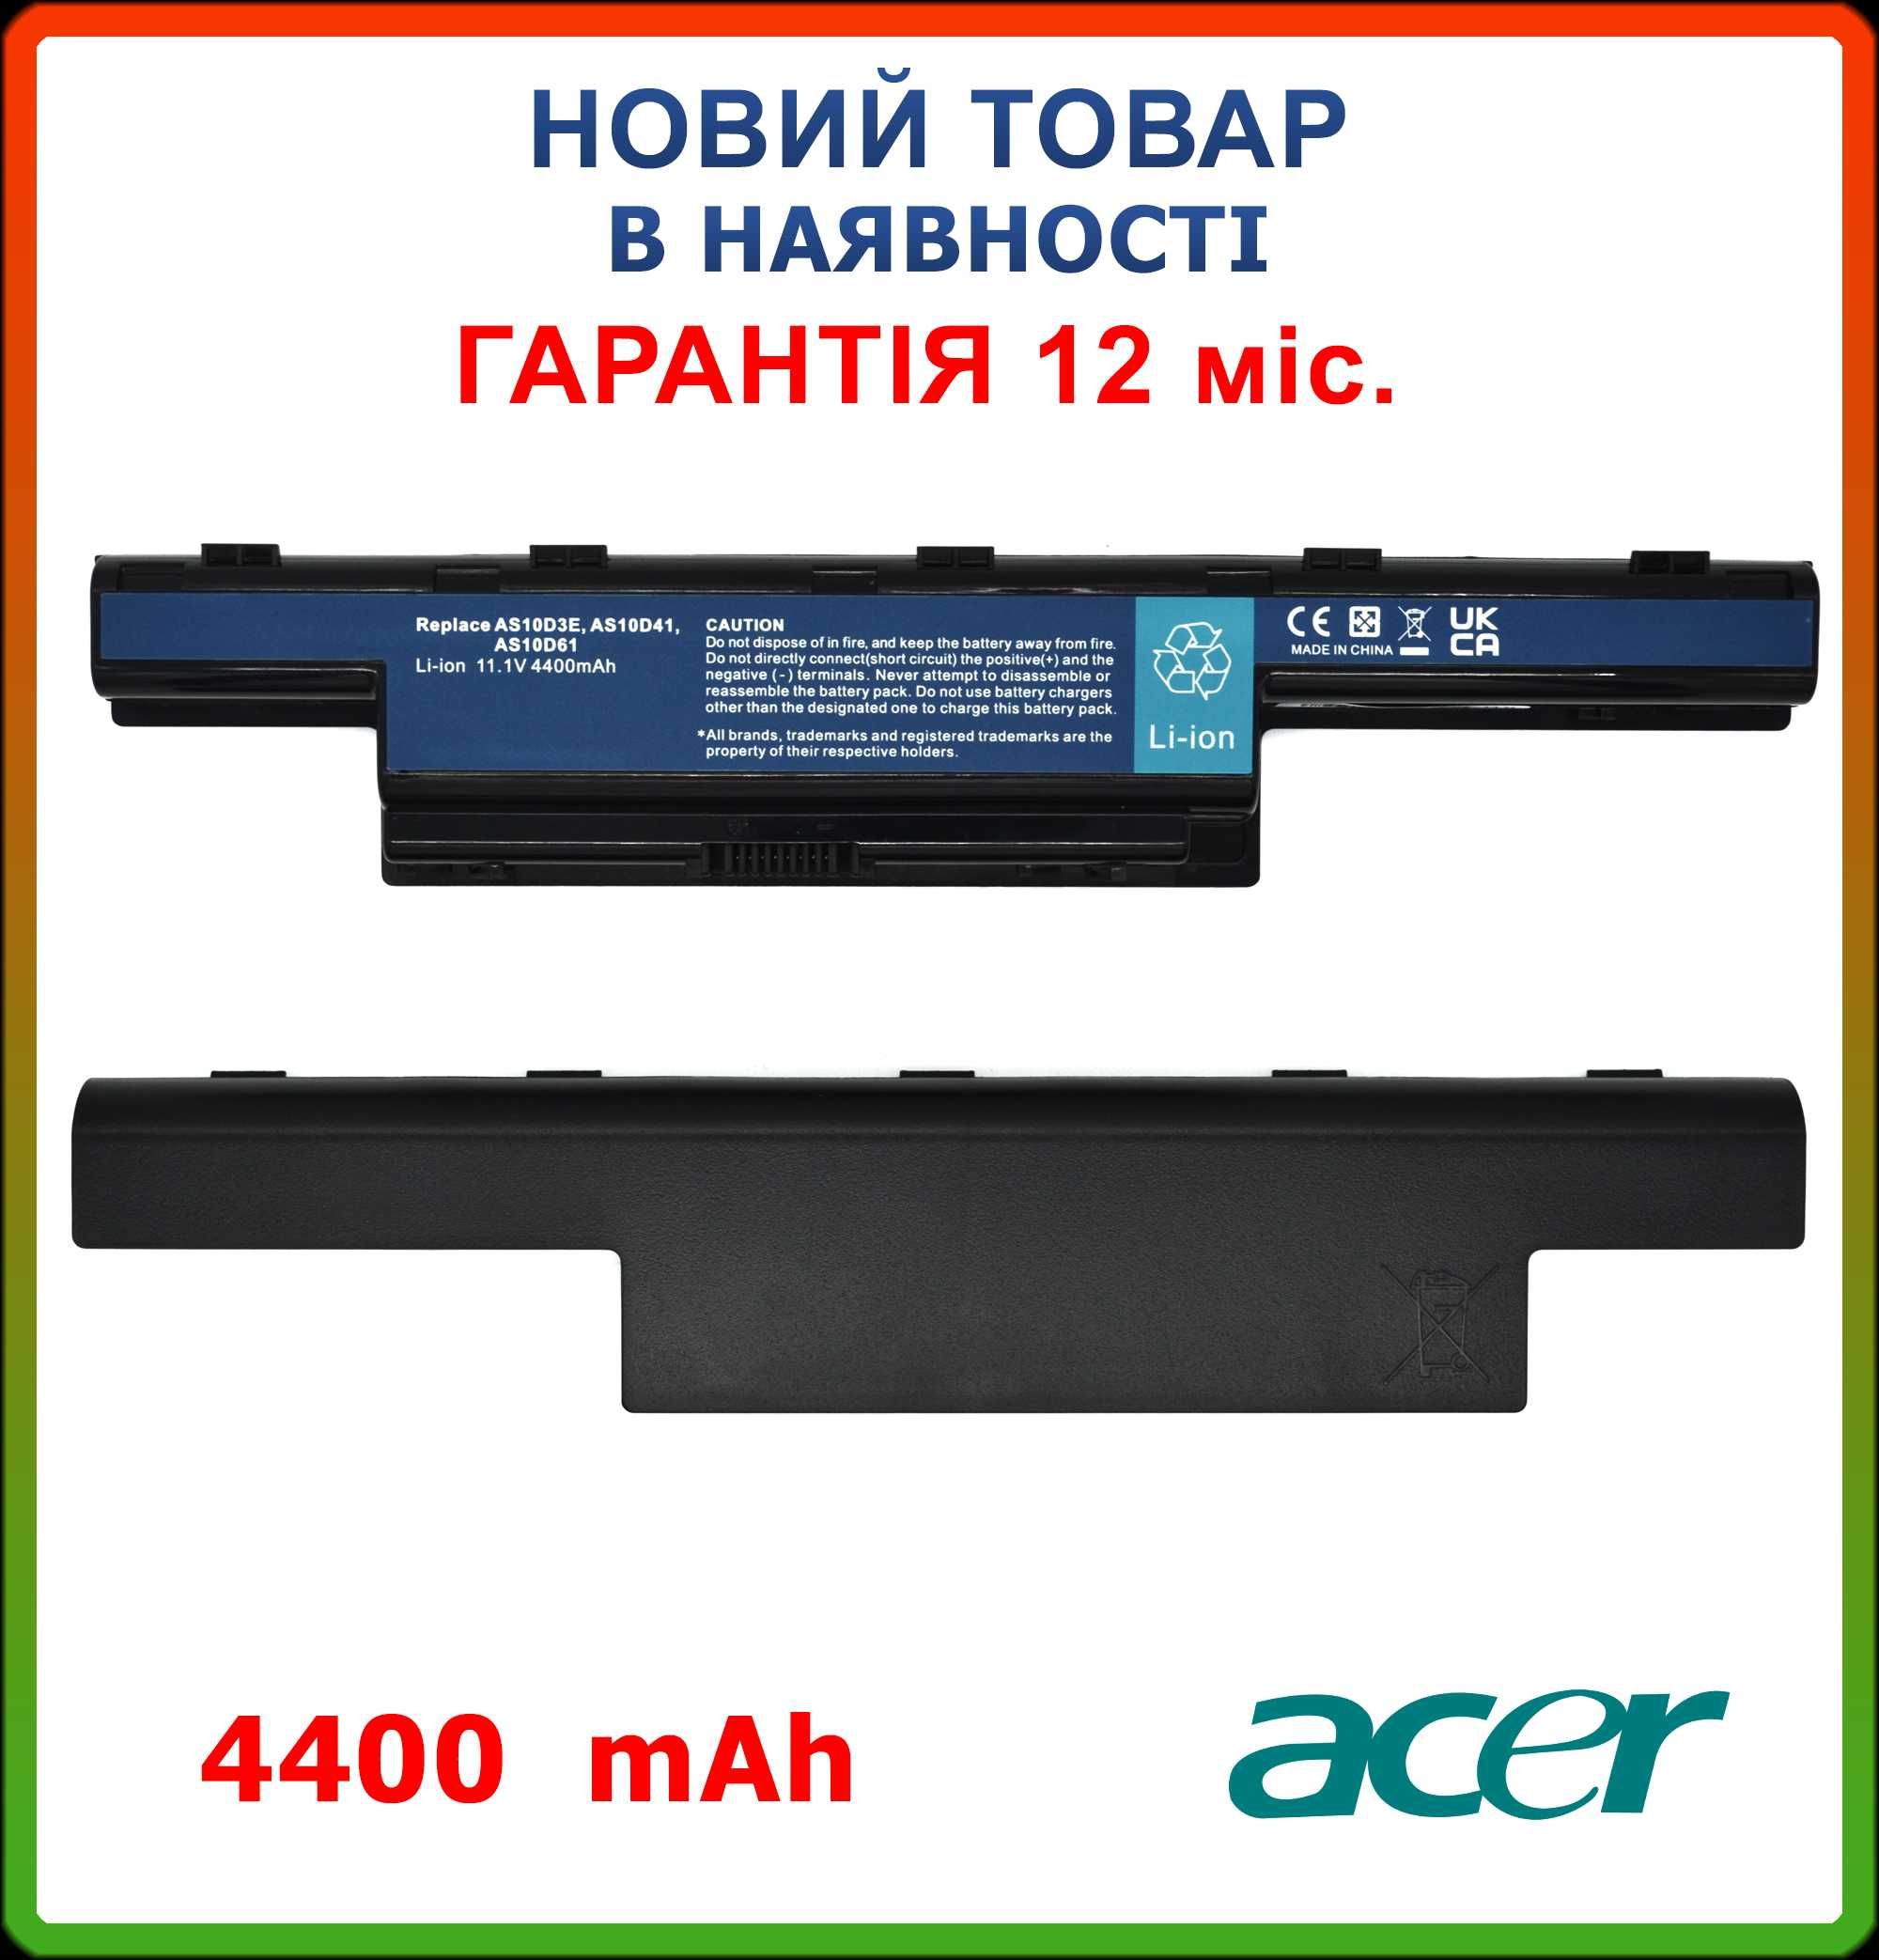 Батарея для ноутбука Acer E1-531 AS10D31